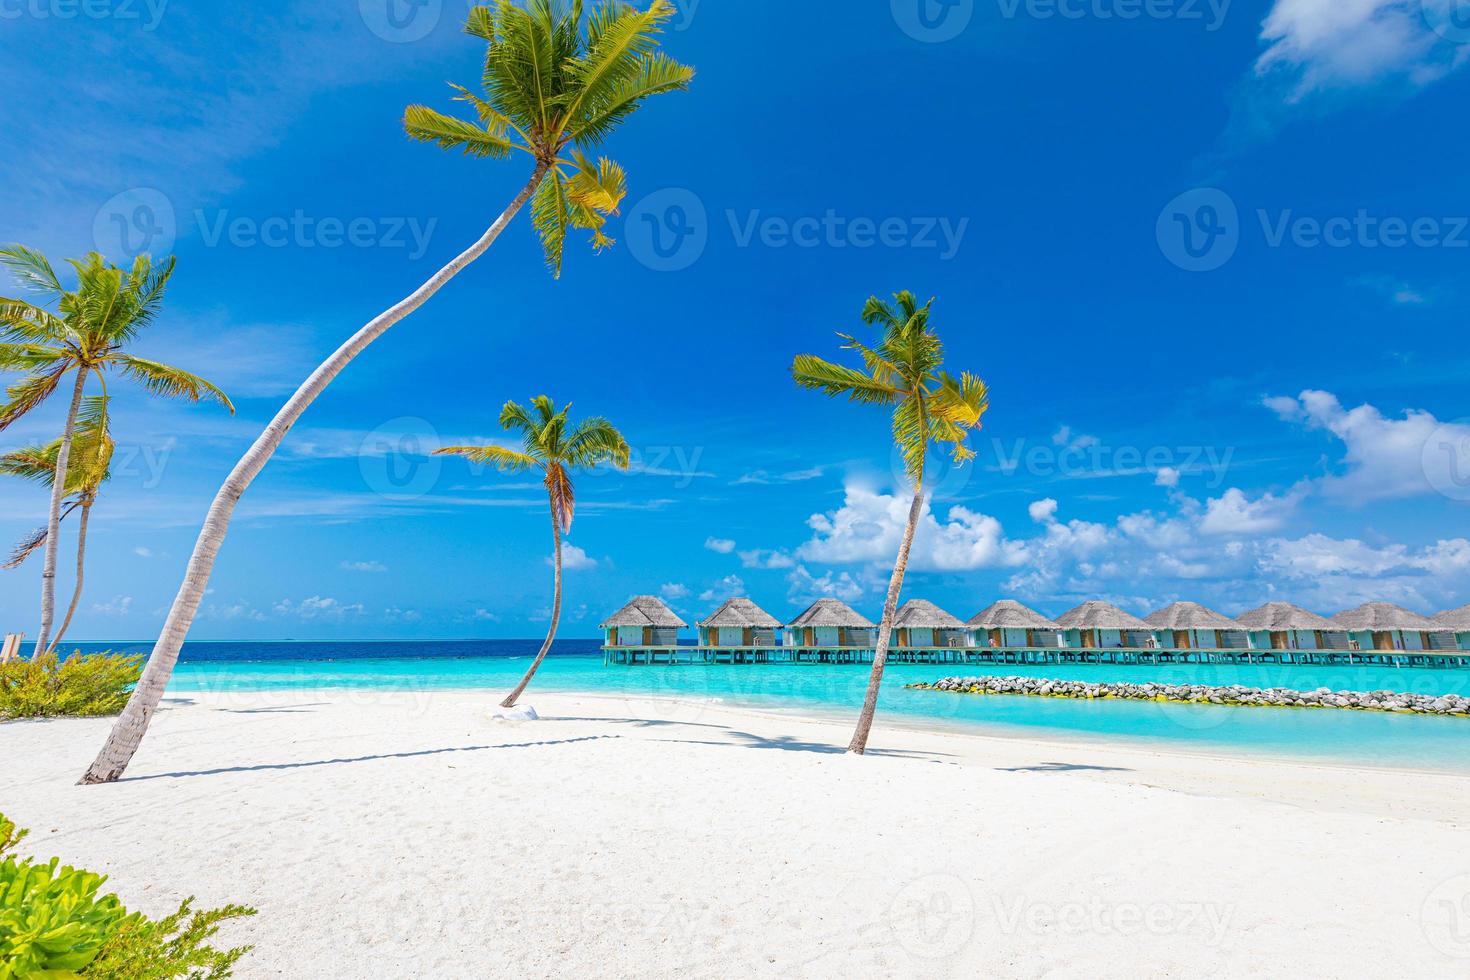 vista del paradiso dell'hotel resort tropicale di lusso. costa idilliaca, spiaggia di sabbia bianca, palme. design ispirato alla spiaggia delle Maldive, vacanze alle Maldive foto